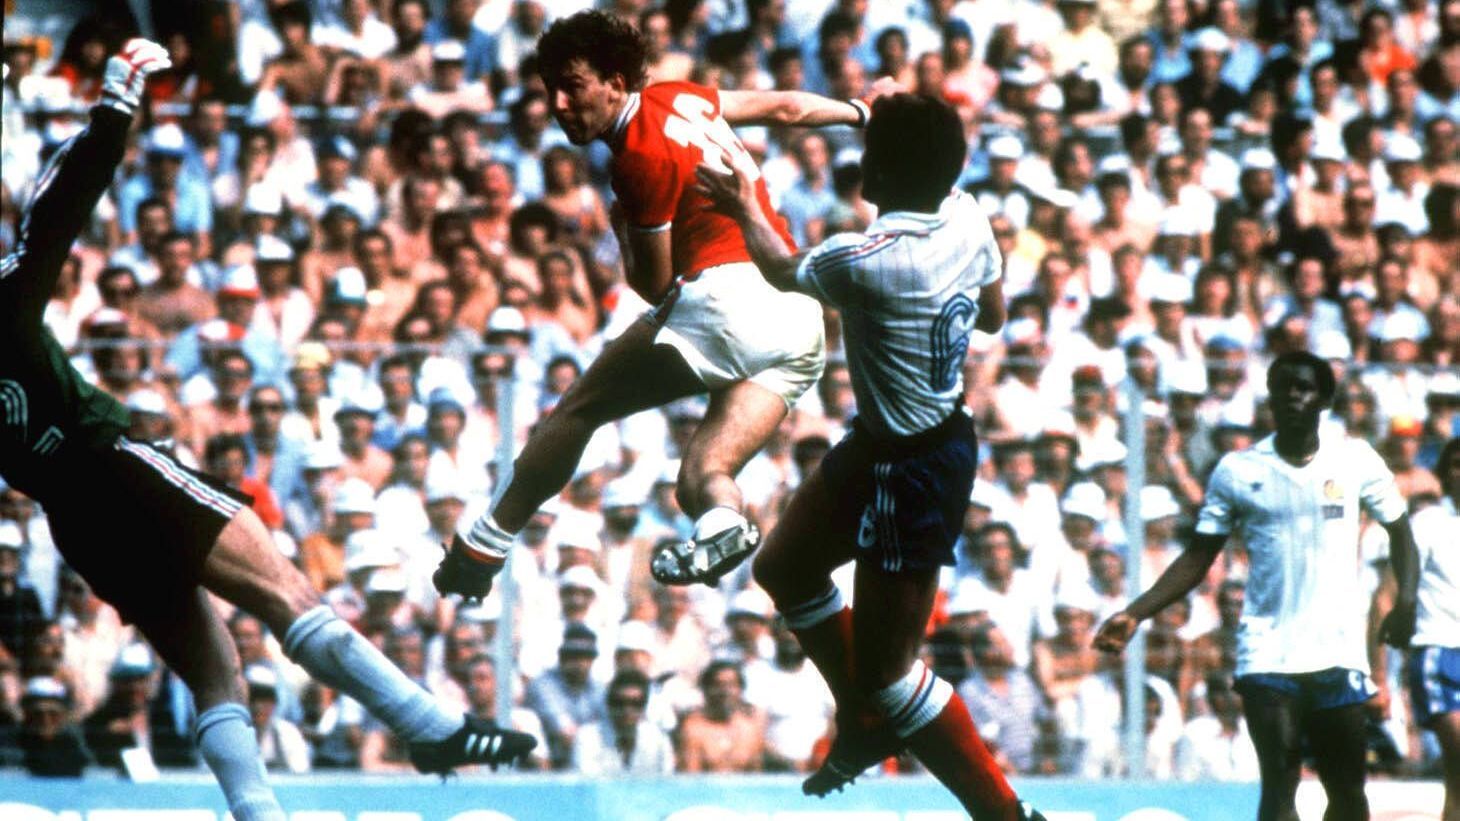 <strong>Platz 14: Bryan Robson (England) - 28 Sekunden</strong><br>Turnier: WM 1982 in Spanien<br>Spiel: Vorrunde gegen Frankreich 3:1<br>Besonderes: Es war Englands erstes WM-Tor nach zwölf Jahren.